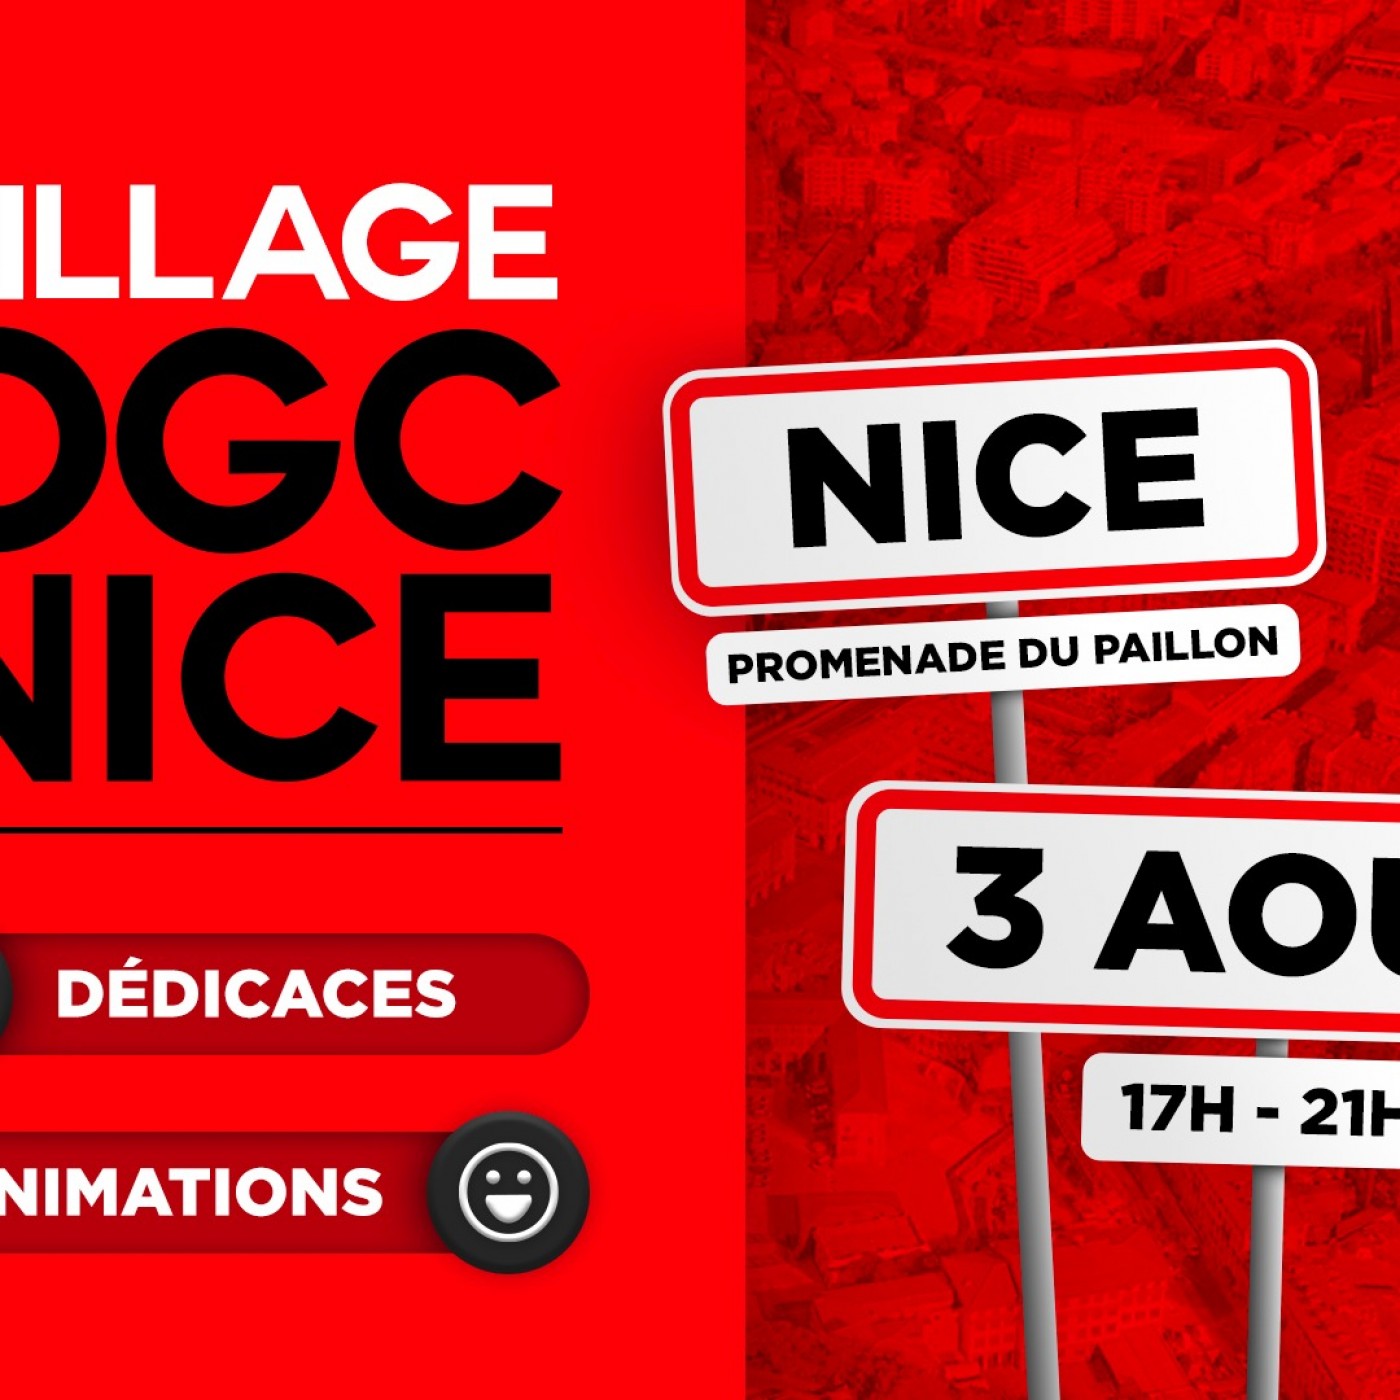 Le village OGC Nice est de retour !